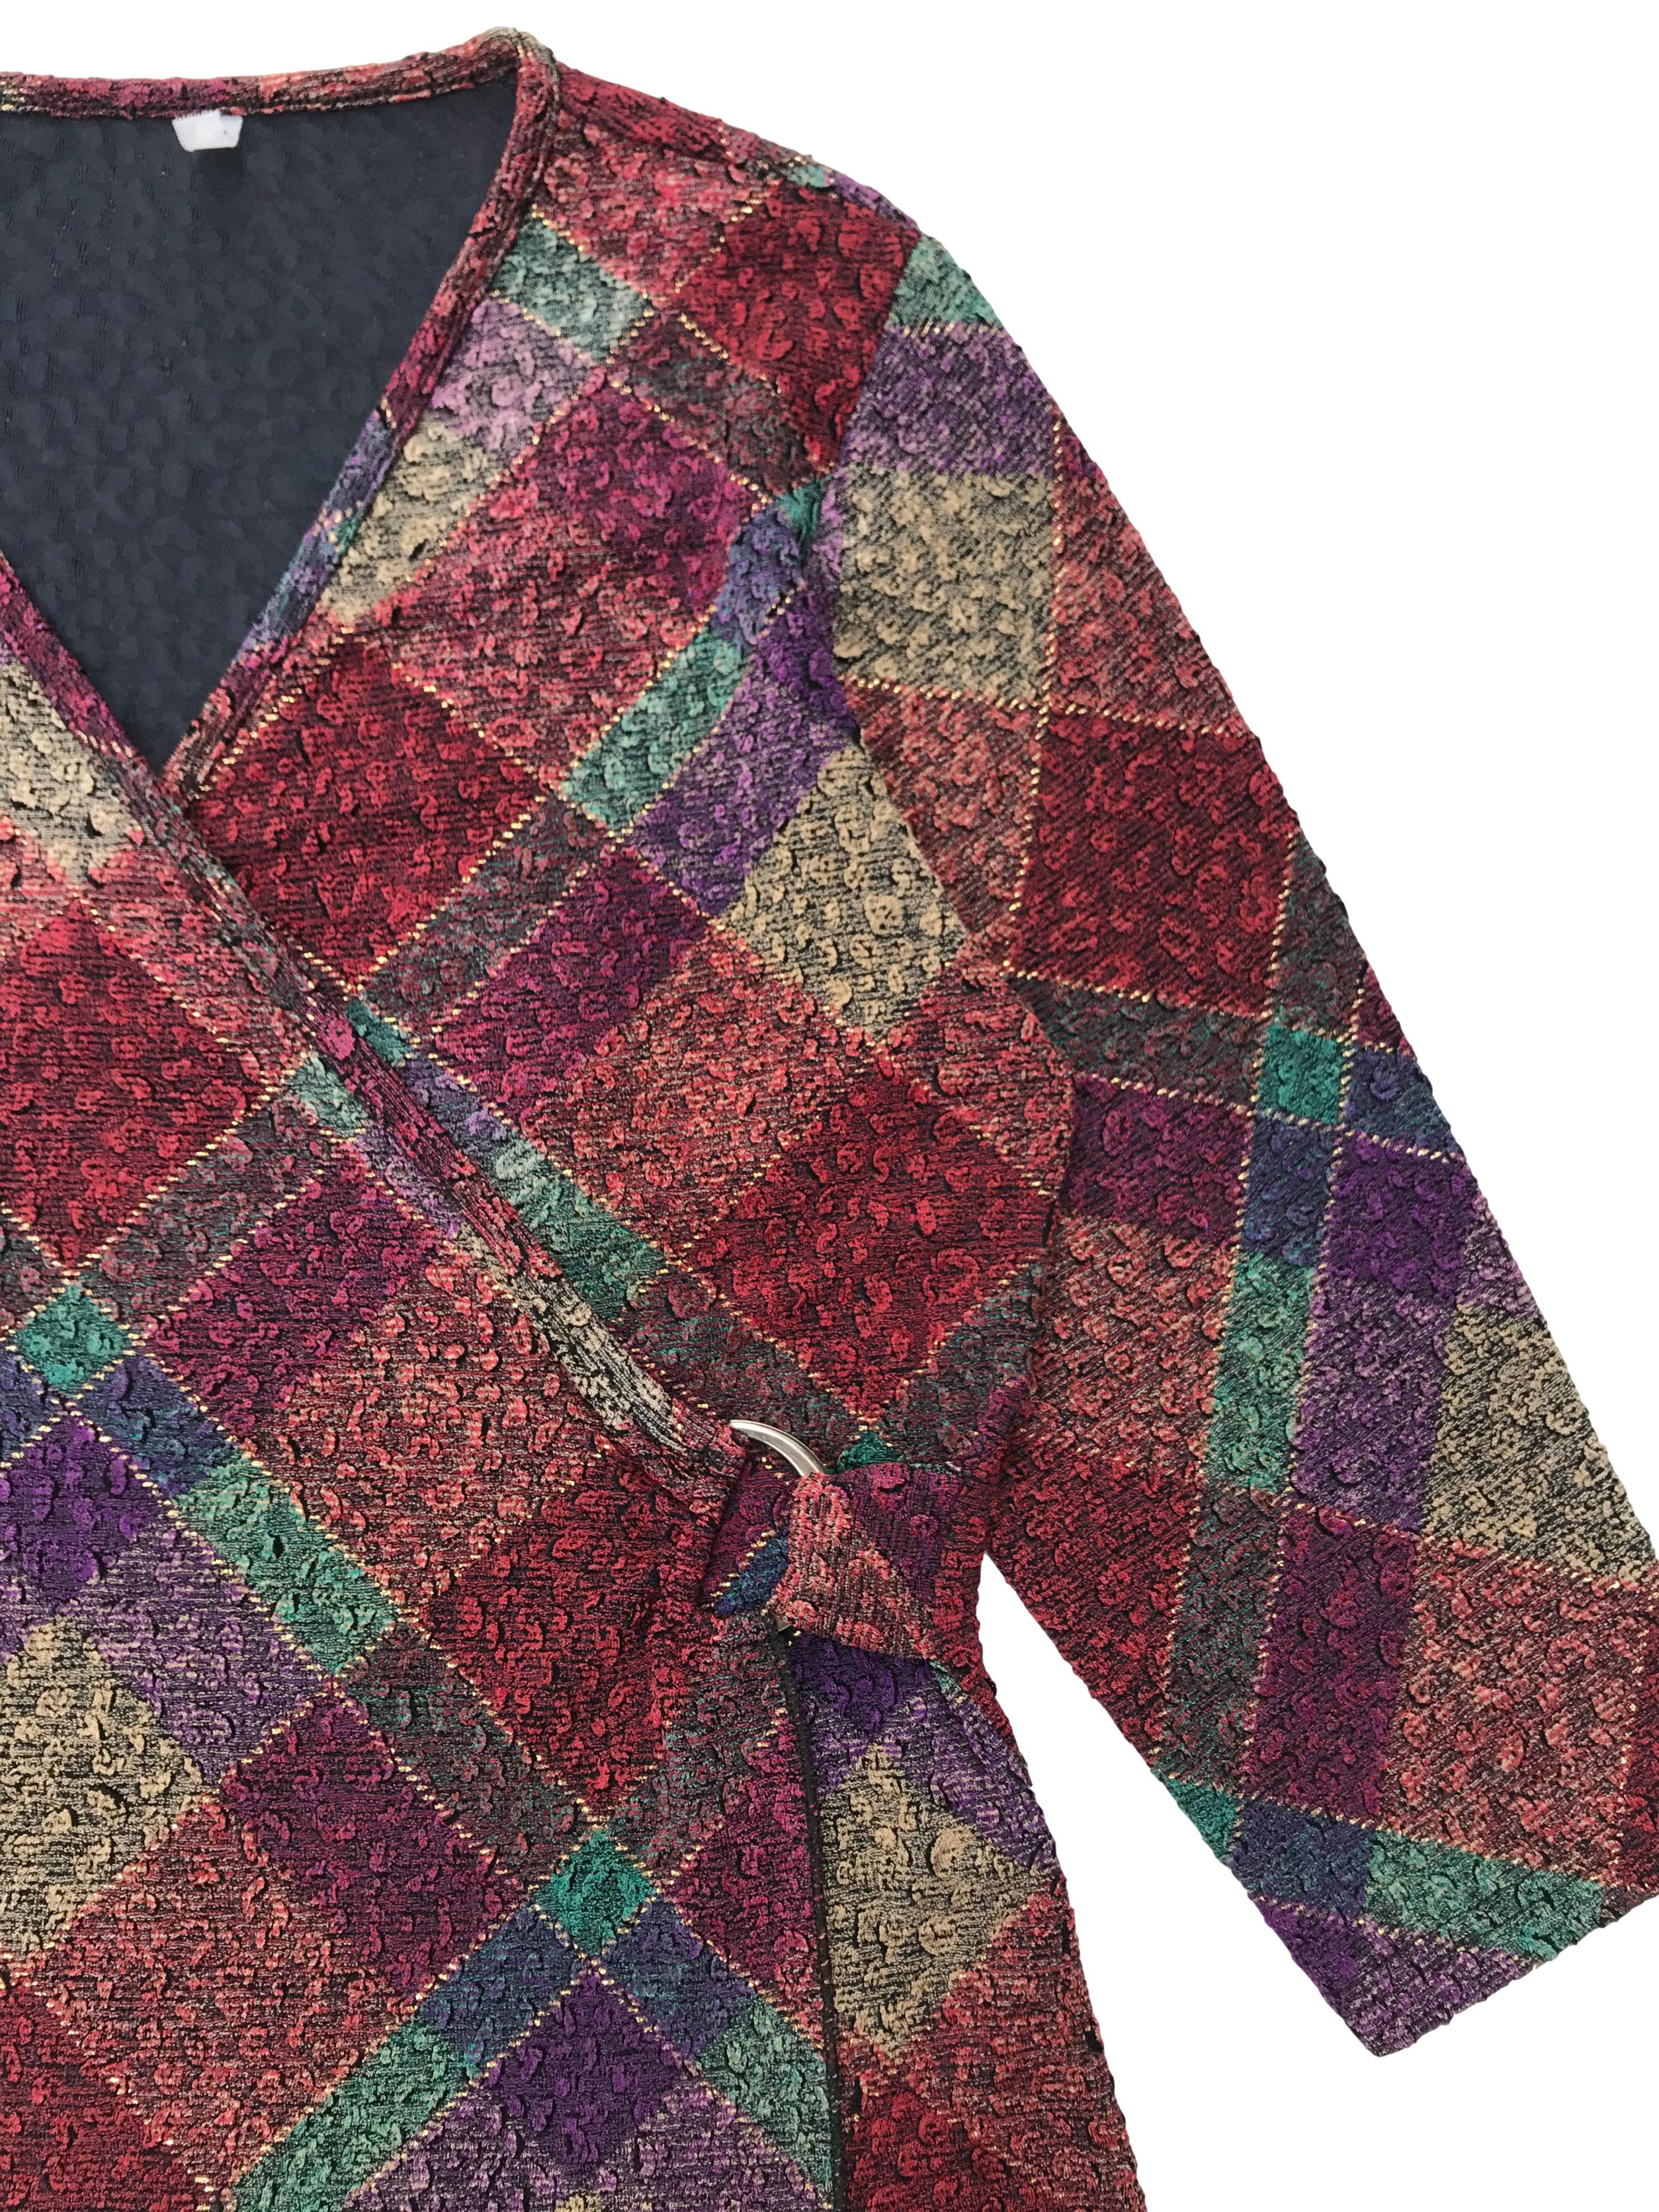 Blusa vintage multicolor, cruzado con hebilla de color, manga 3/4, stretch. 